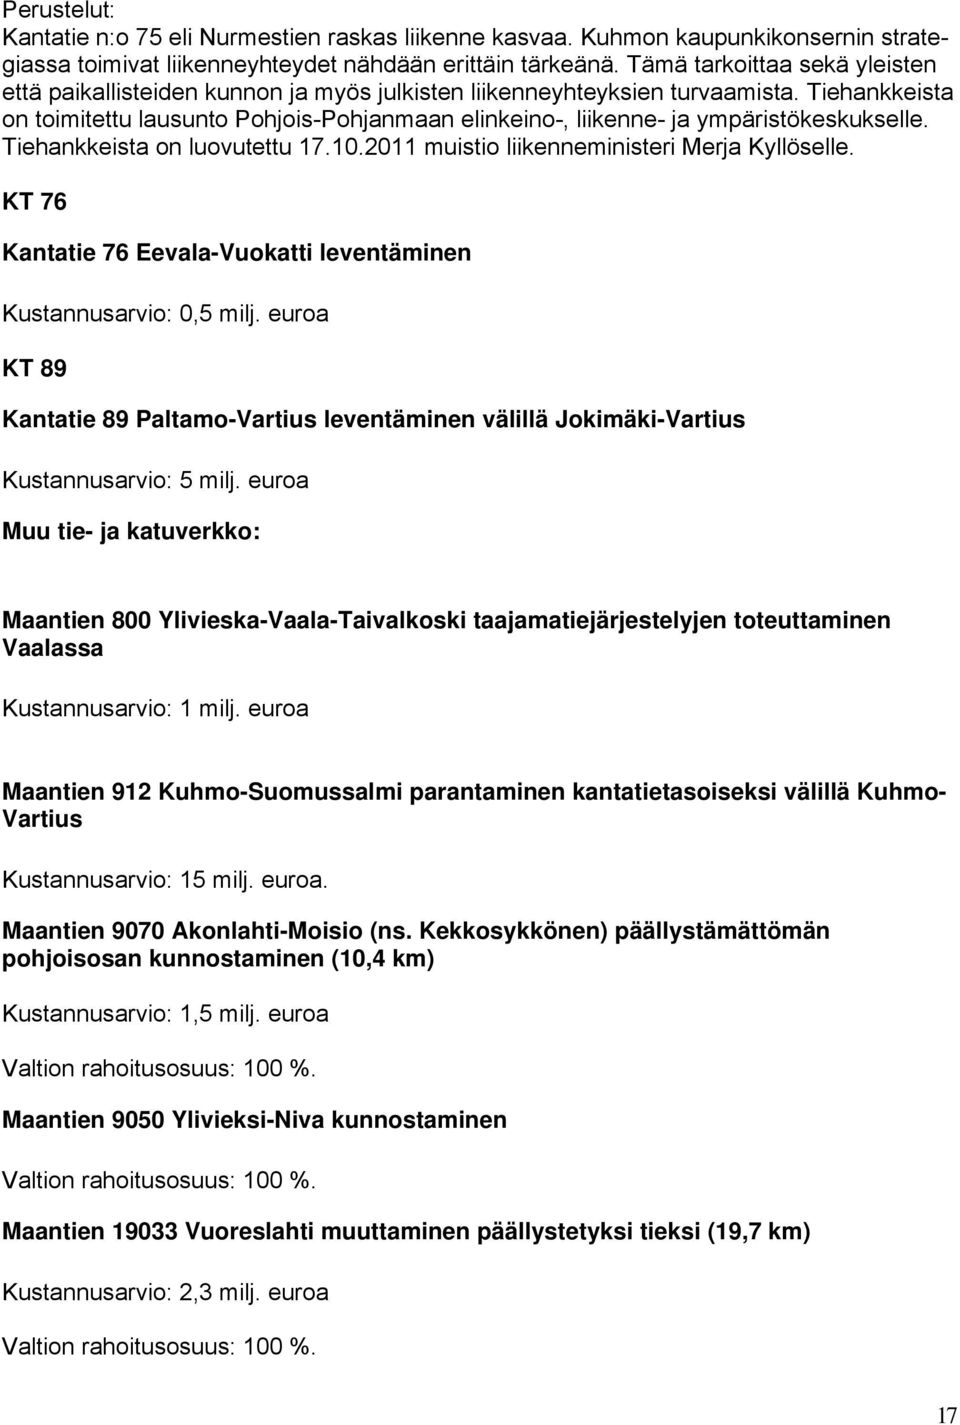 Tiehankkeista on toimitettu lausunto Pohjois-Pohjanmaan elinkeino-, liikenne- ja ympäristökeskukselle. Tiehankkeista on luovutettu 17.10.2011 muistio liikenneministeri Merja Kyllöselle.